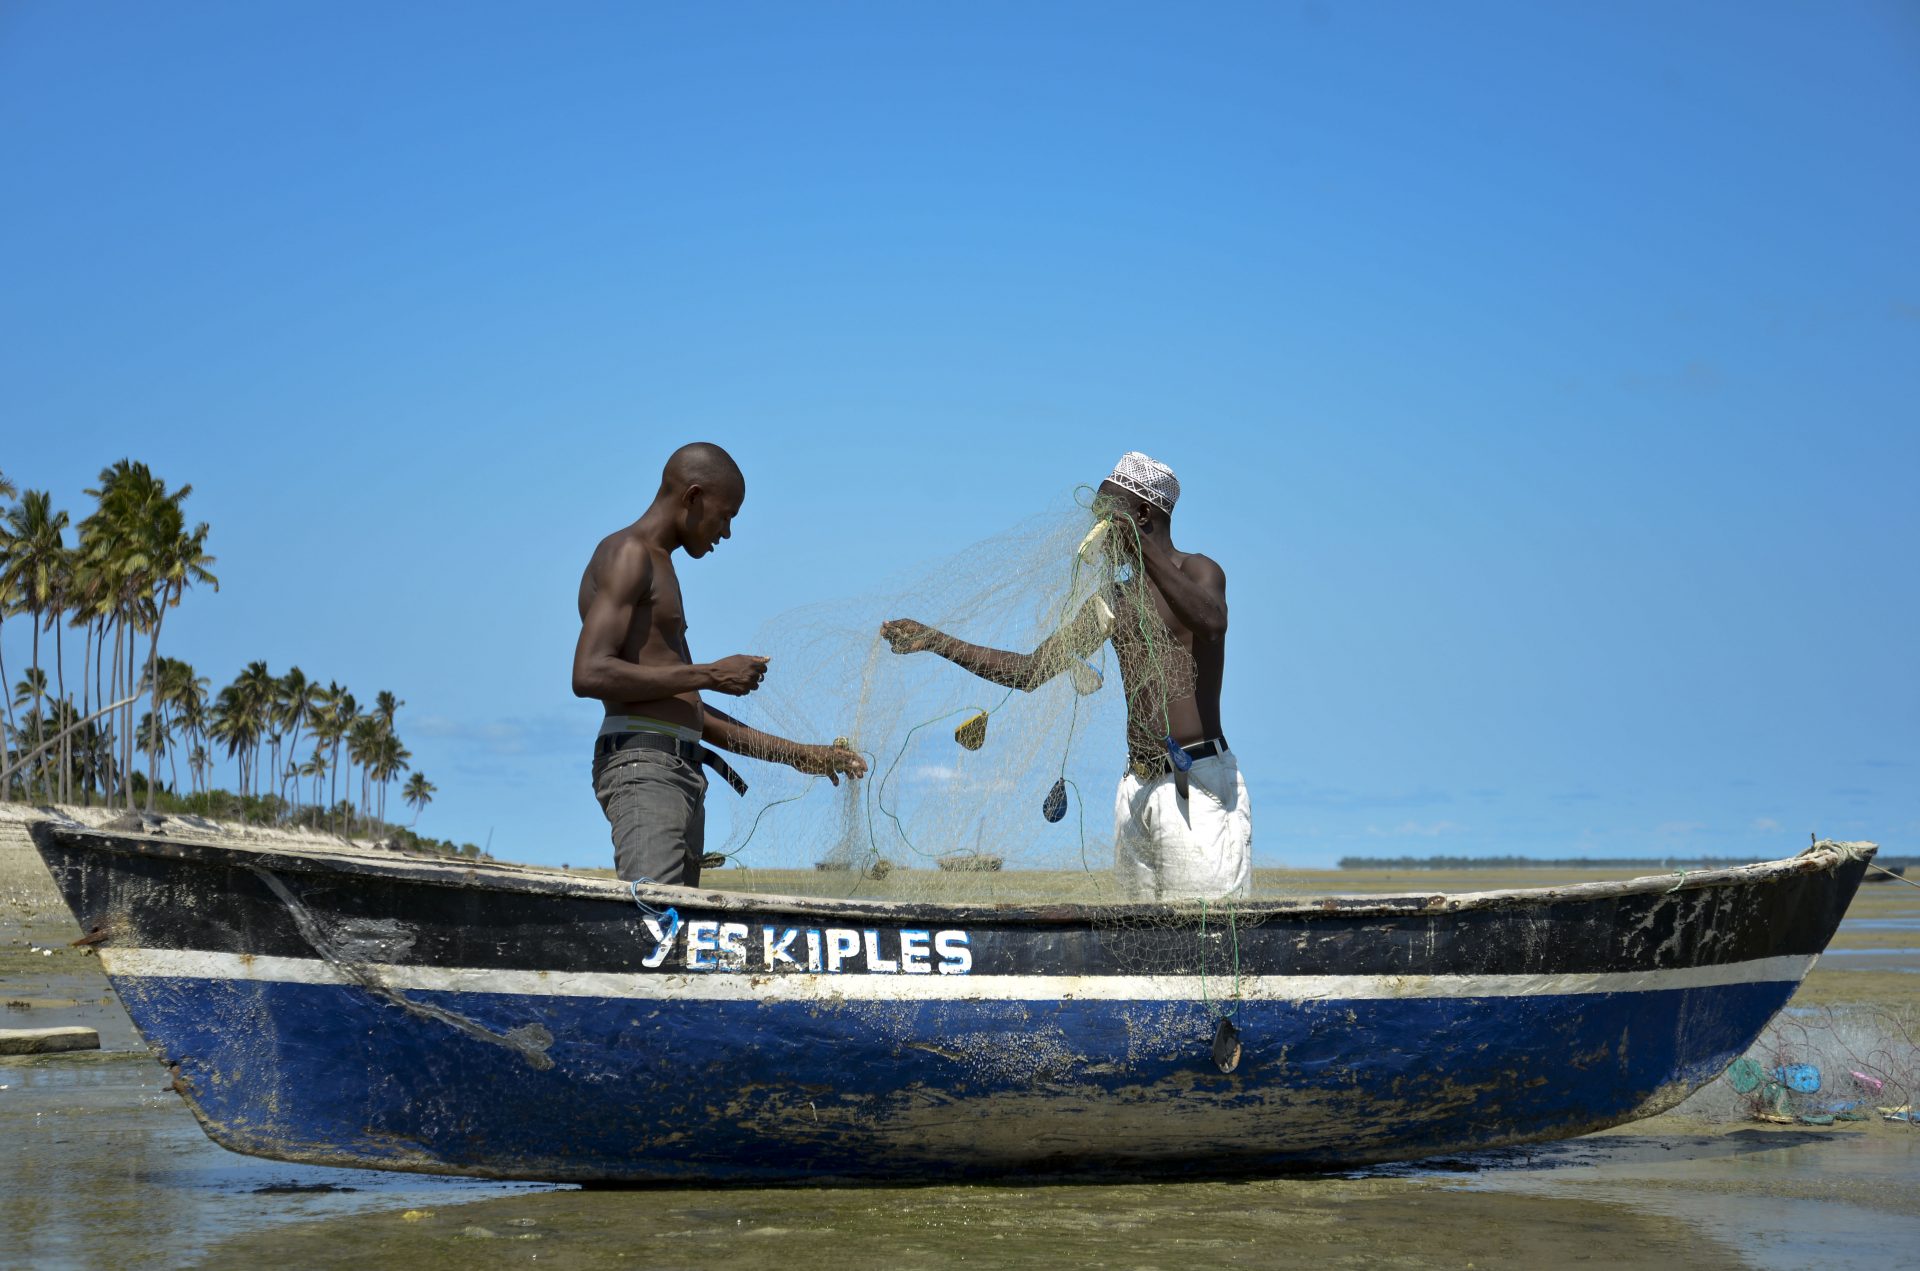 Pescadores da aldeia da Maganja, no norte de Moçambique, preparam as suas redes para a pesca, 16 de março de 2015. A comunidade de pescadores da aldeia de Maganja vive dias de incerteza desde que foi informada que "o mar vai fechar", por causa da instalação de um megaprojeto de processamento de gás natural. EMANUEL PEREIRA/LUSA